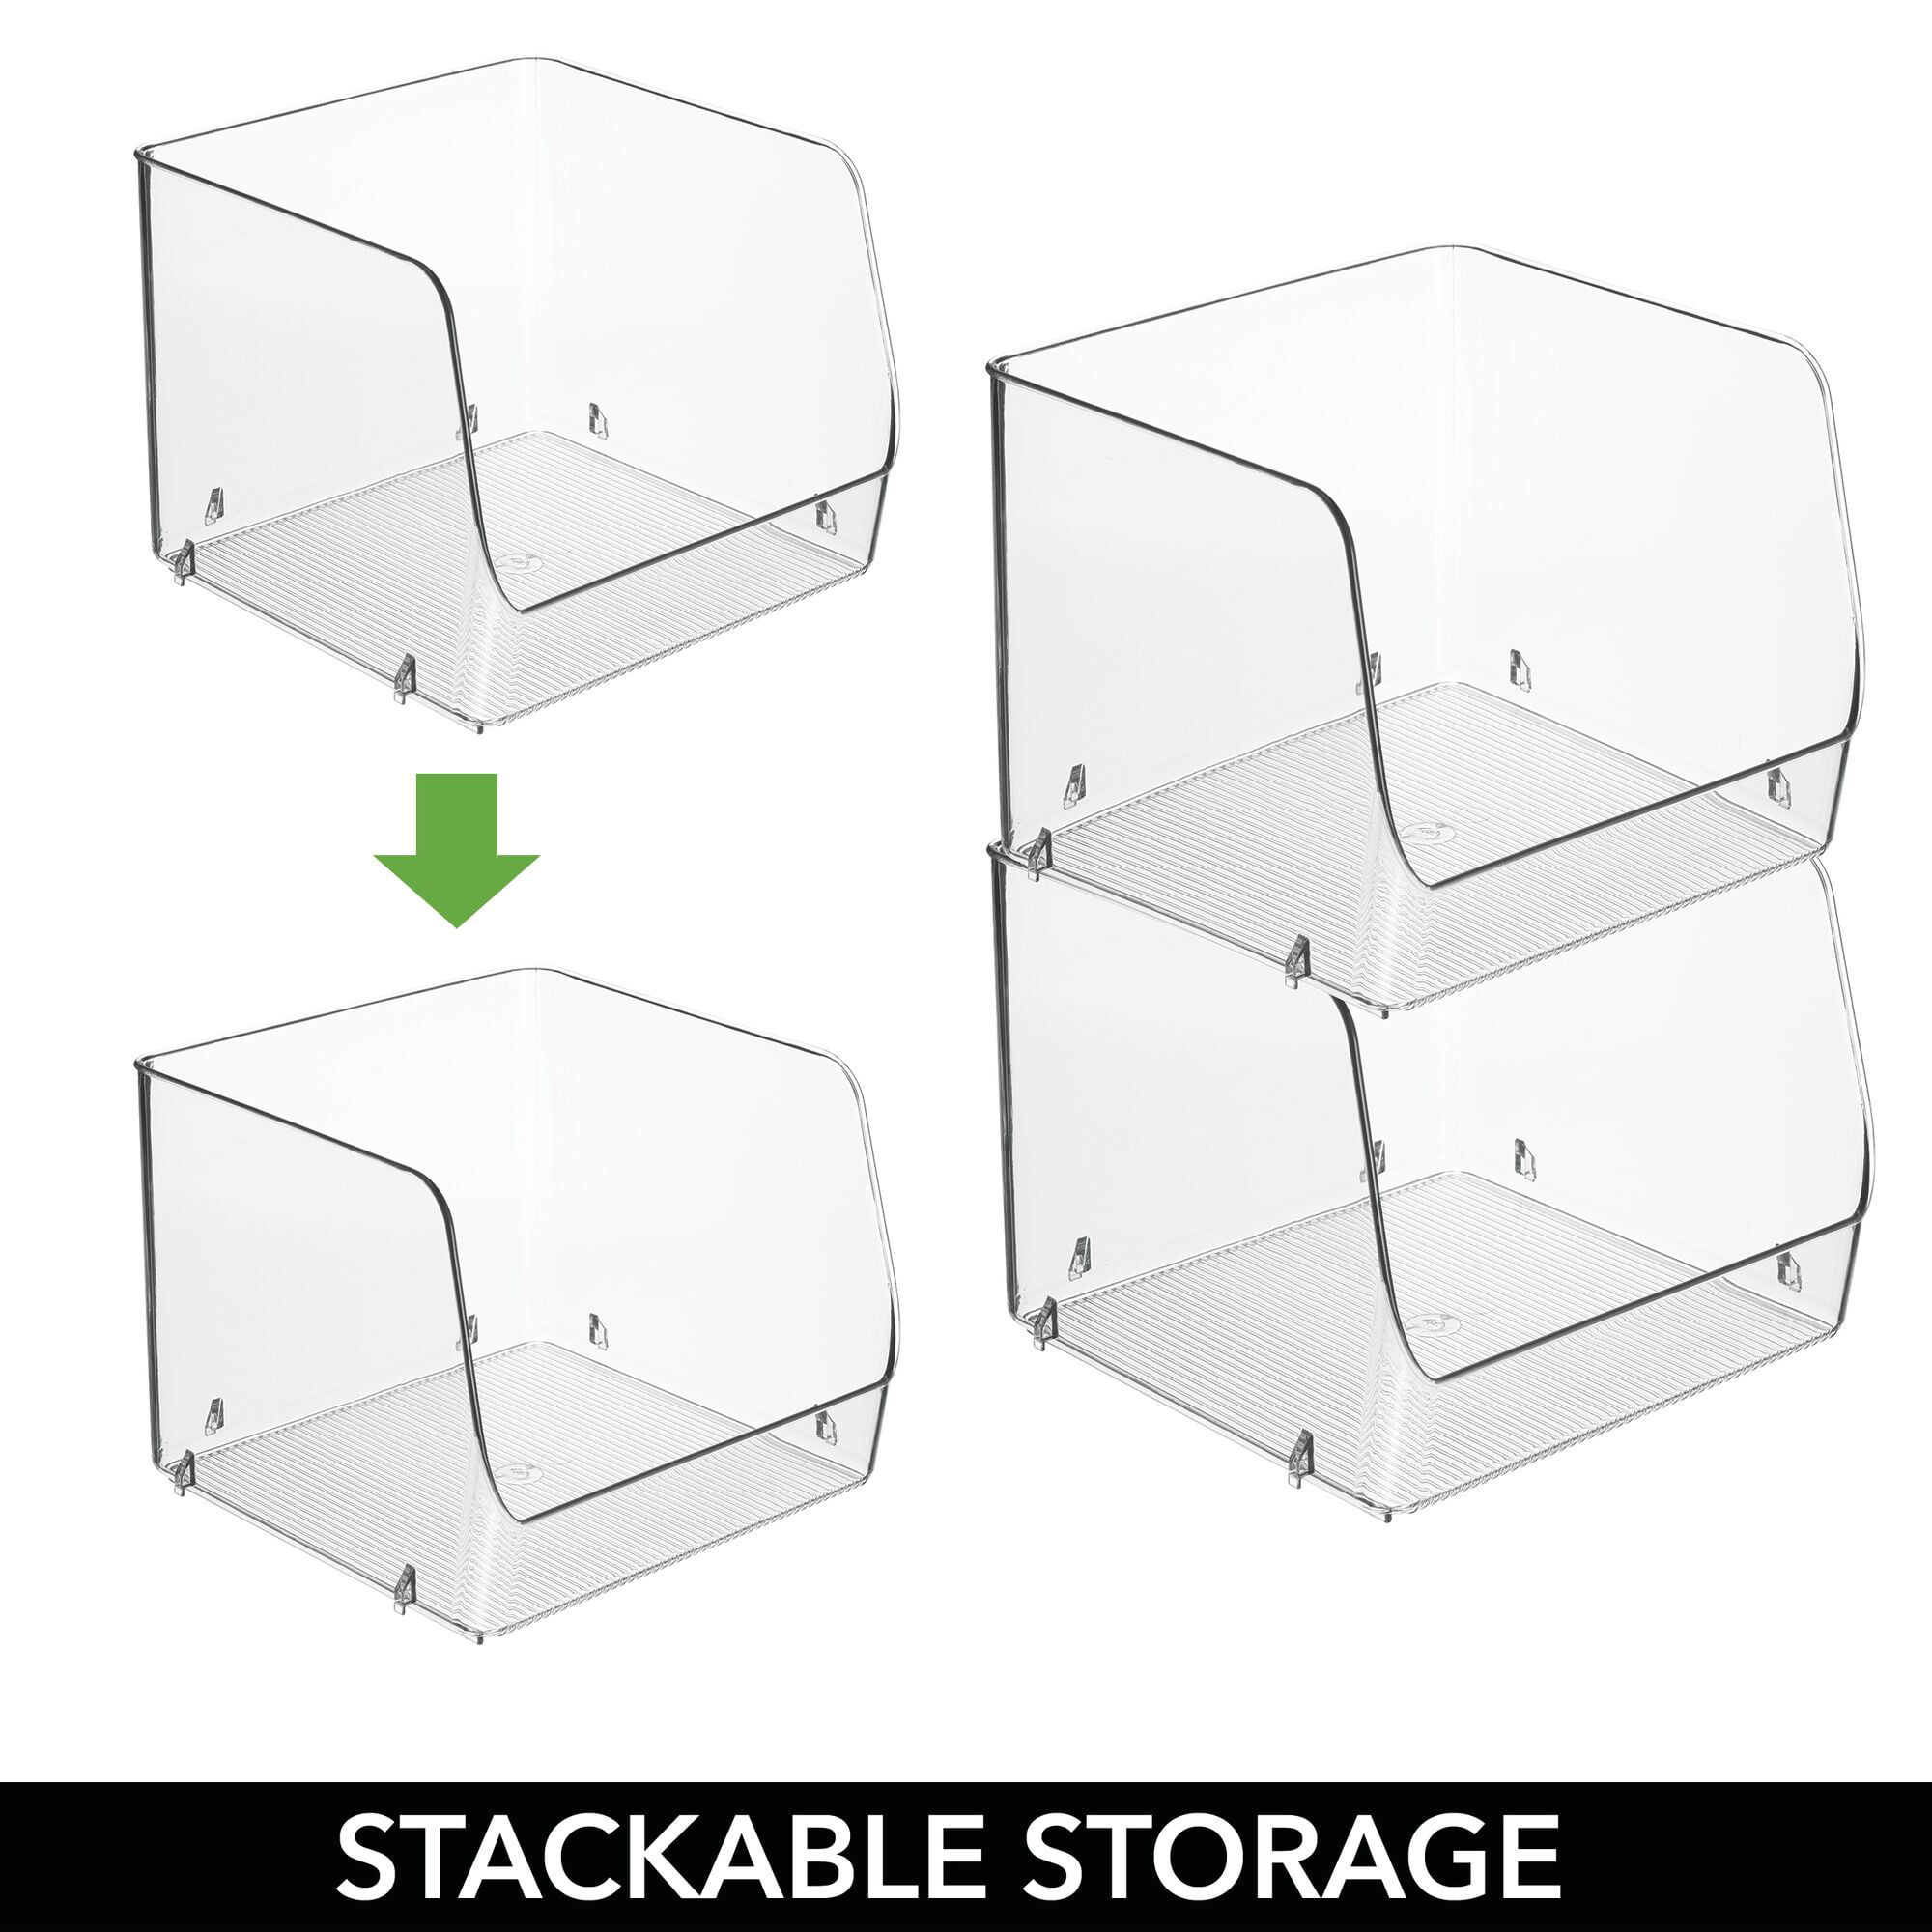 mDesign Linus Open Front Kitchen Plastic Storage Organizer Bin, 4 Pack -  8.5 x 8.5 x 7.5, White